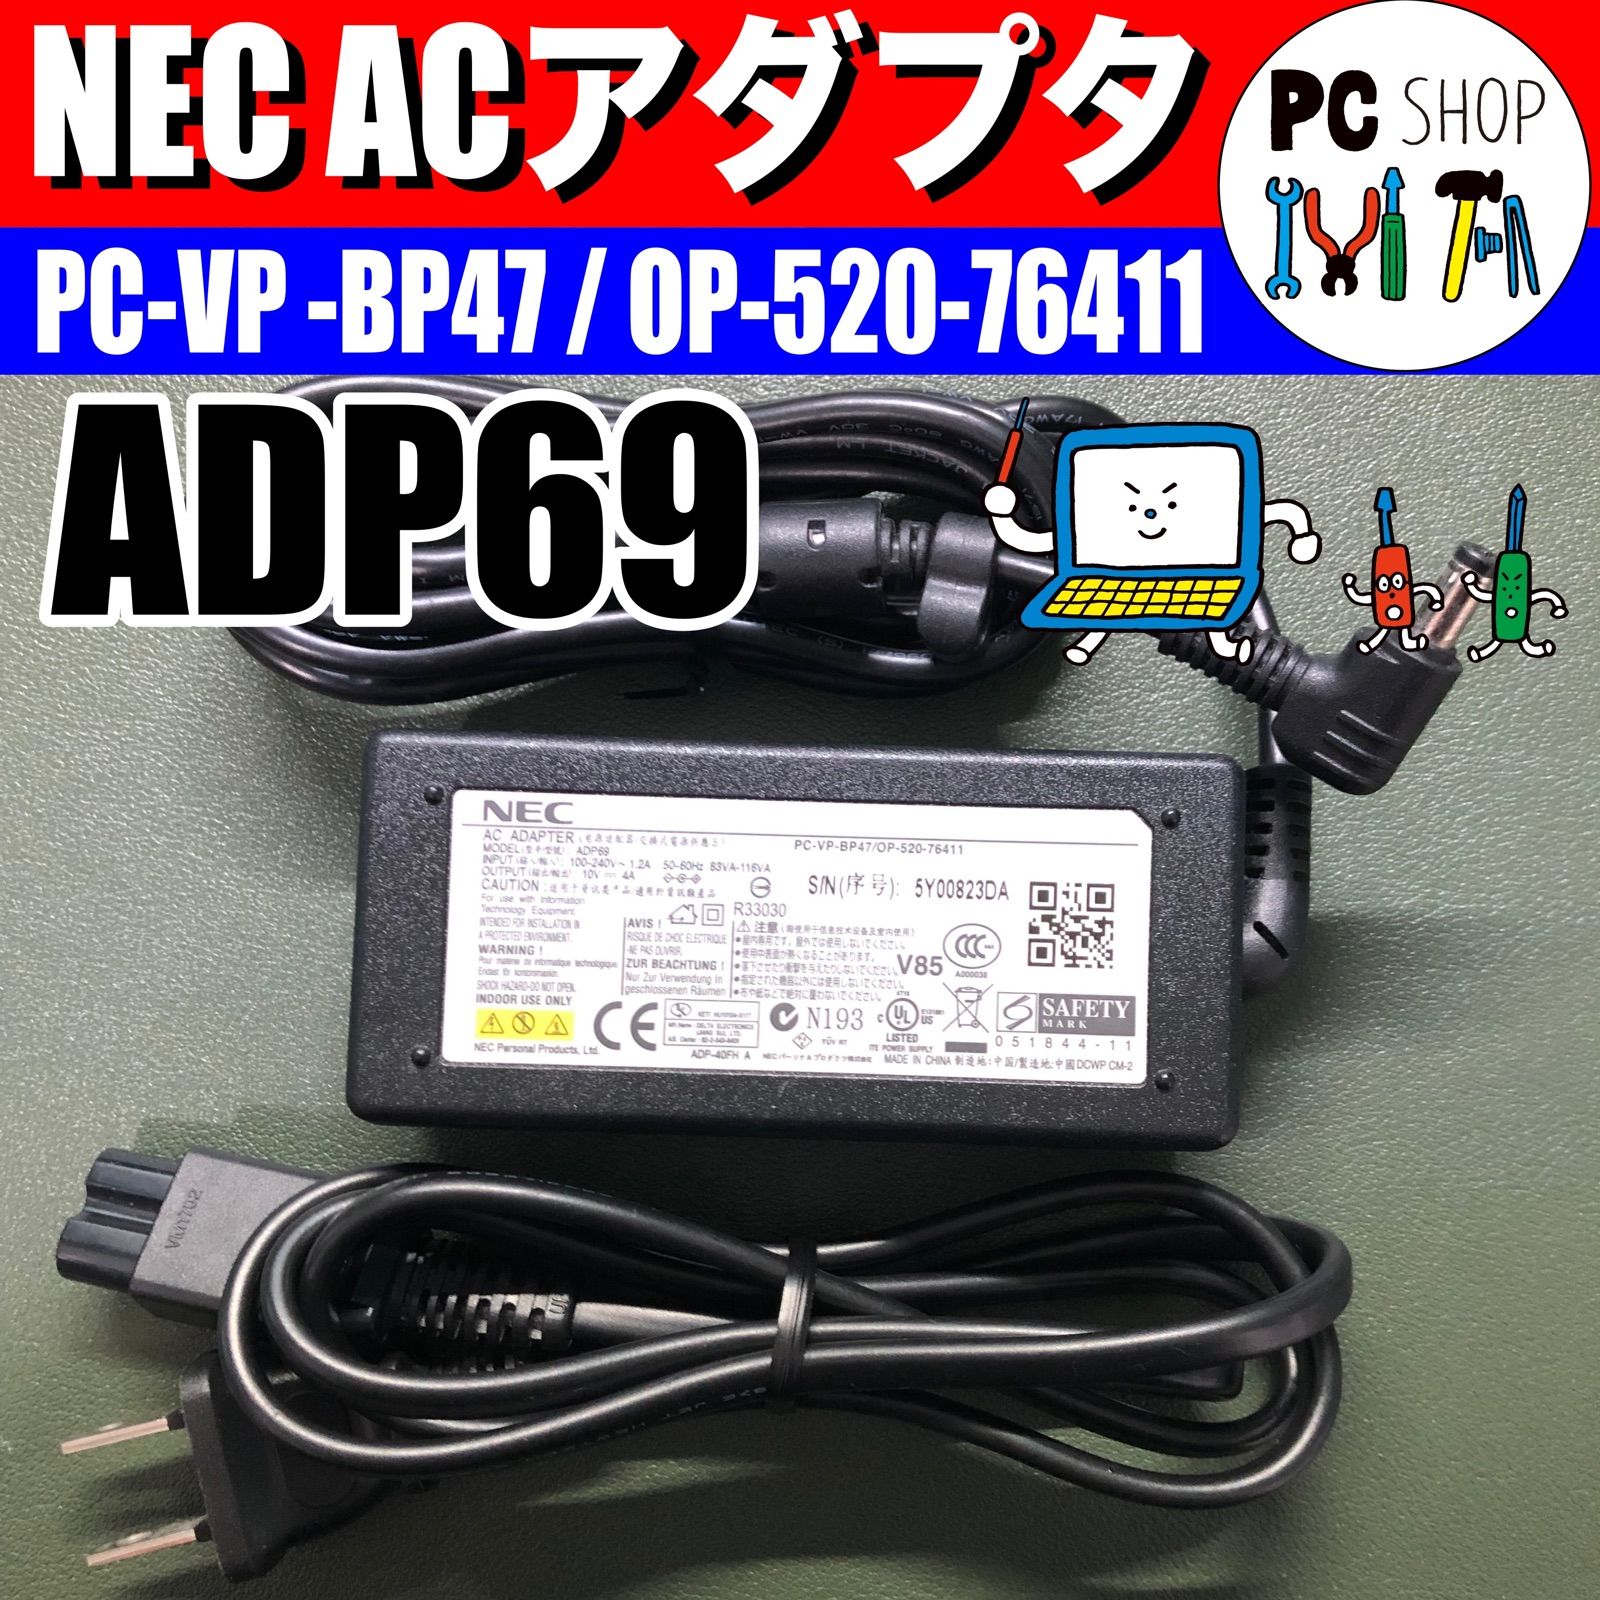 MA-010051] NEC純正 ACアダプタ ADP69 PC-VP-BP47 / OP-520-76411 10V 4A ノートパソコン用 -  メルカリ